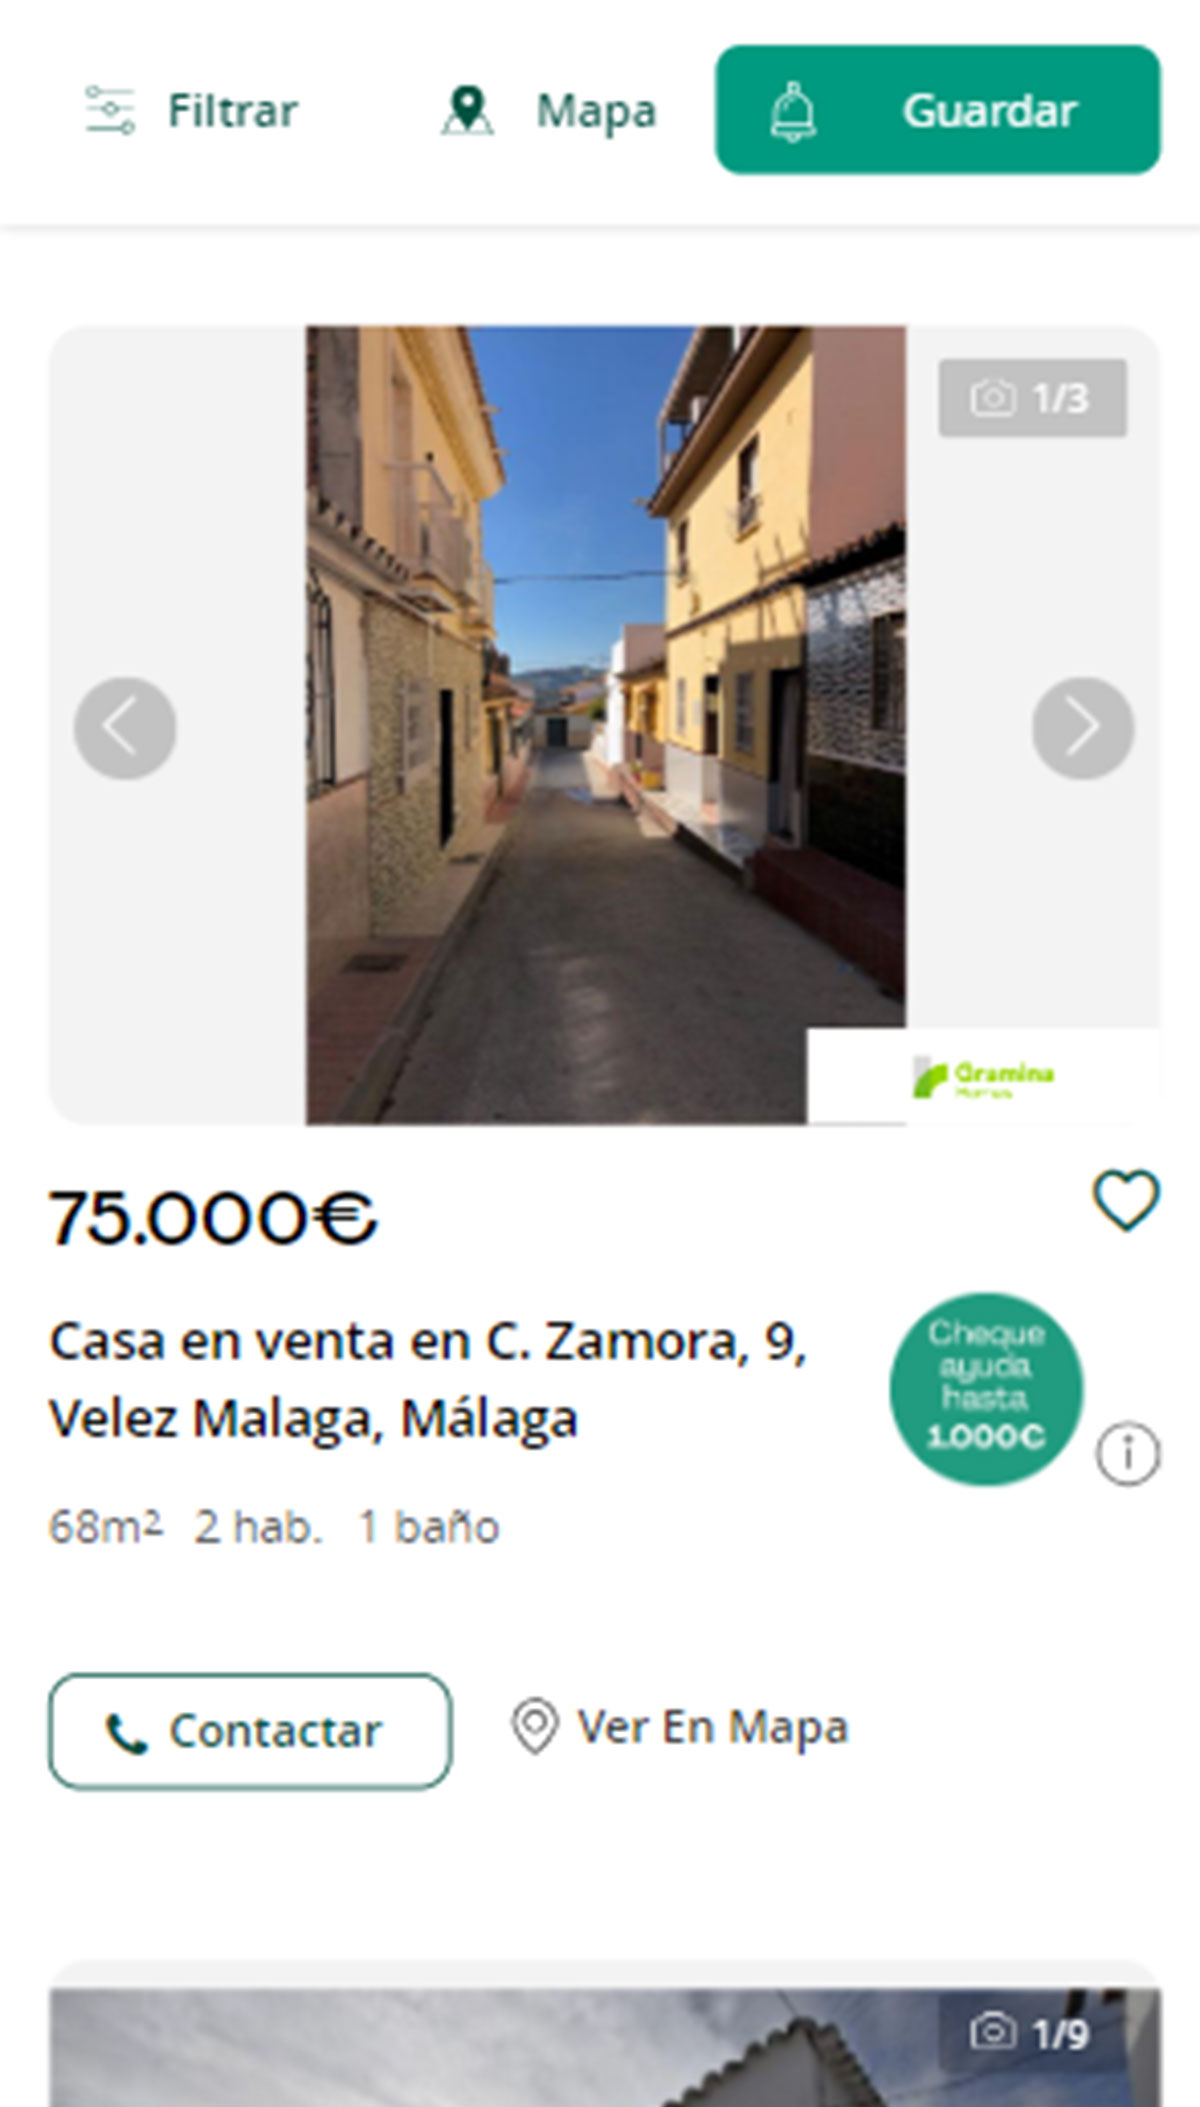 Piso a la venta en Málaga por 75.000 euros